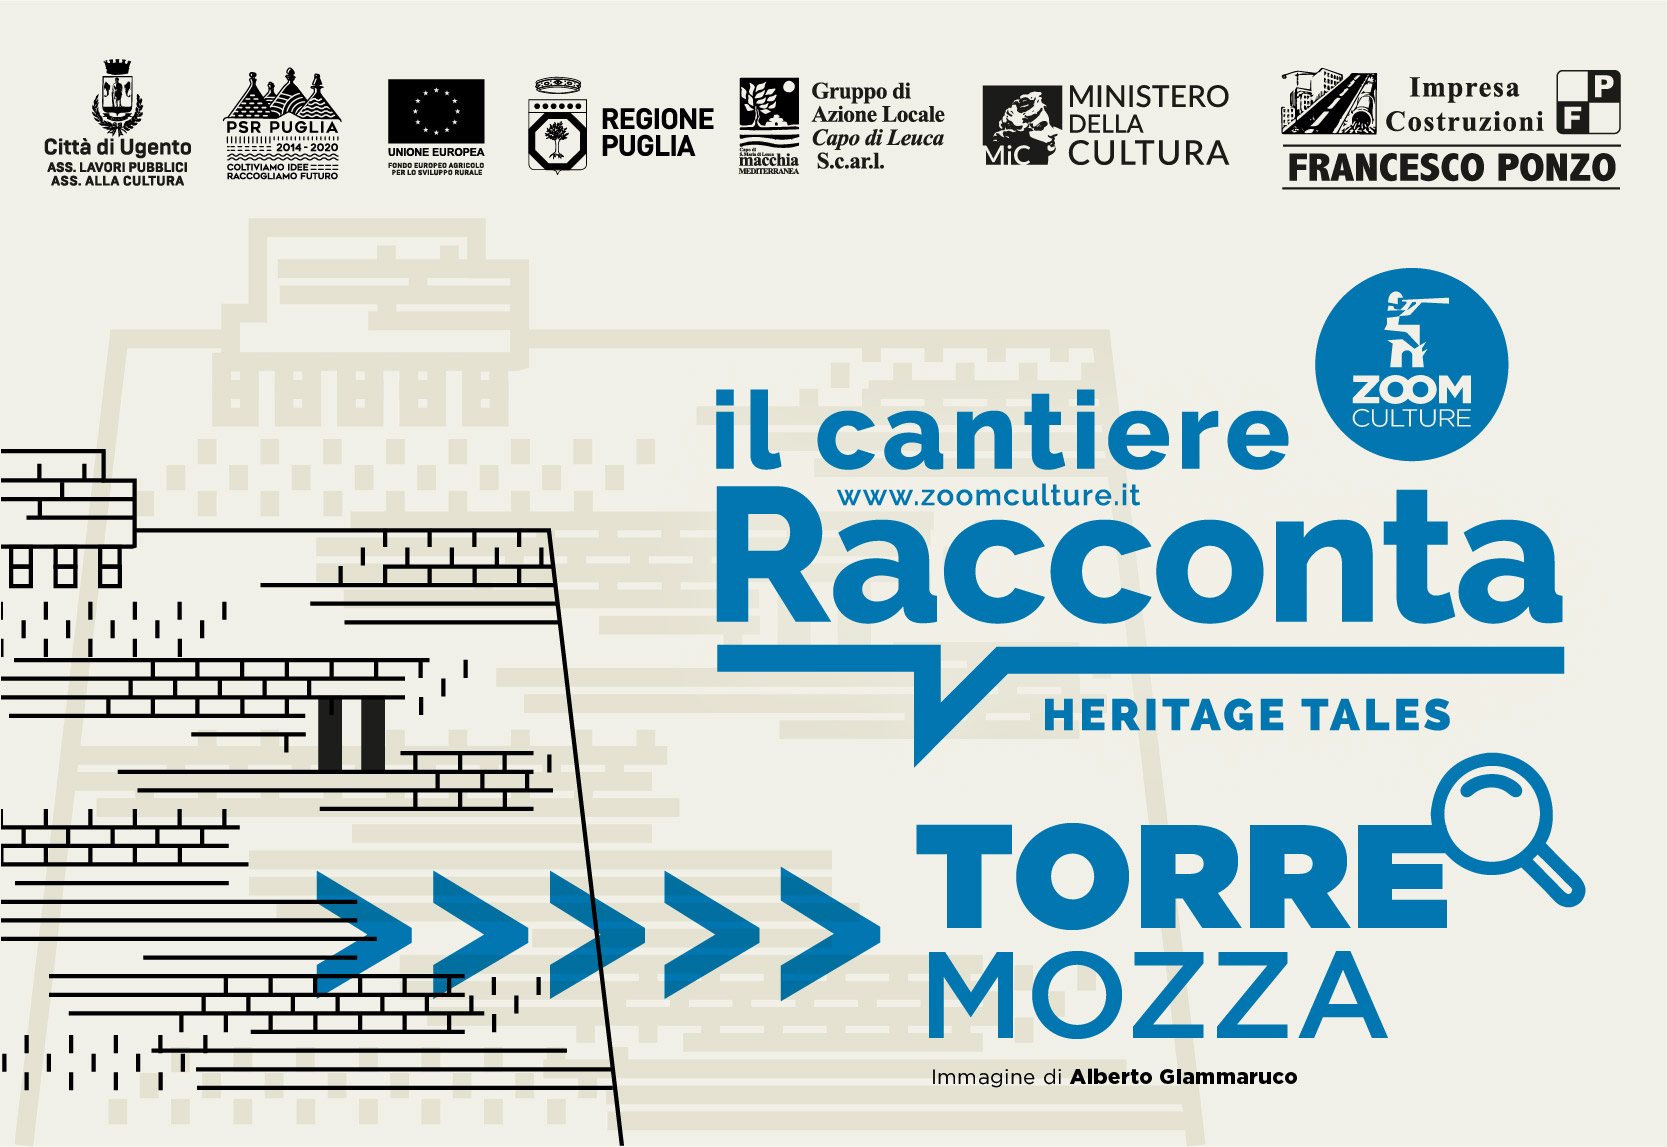 Torre Mozza - Immagine di copertina del Cantiere Racconta | Torre Mozza con illustrazione della torre e loghi istituzionali